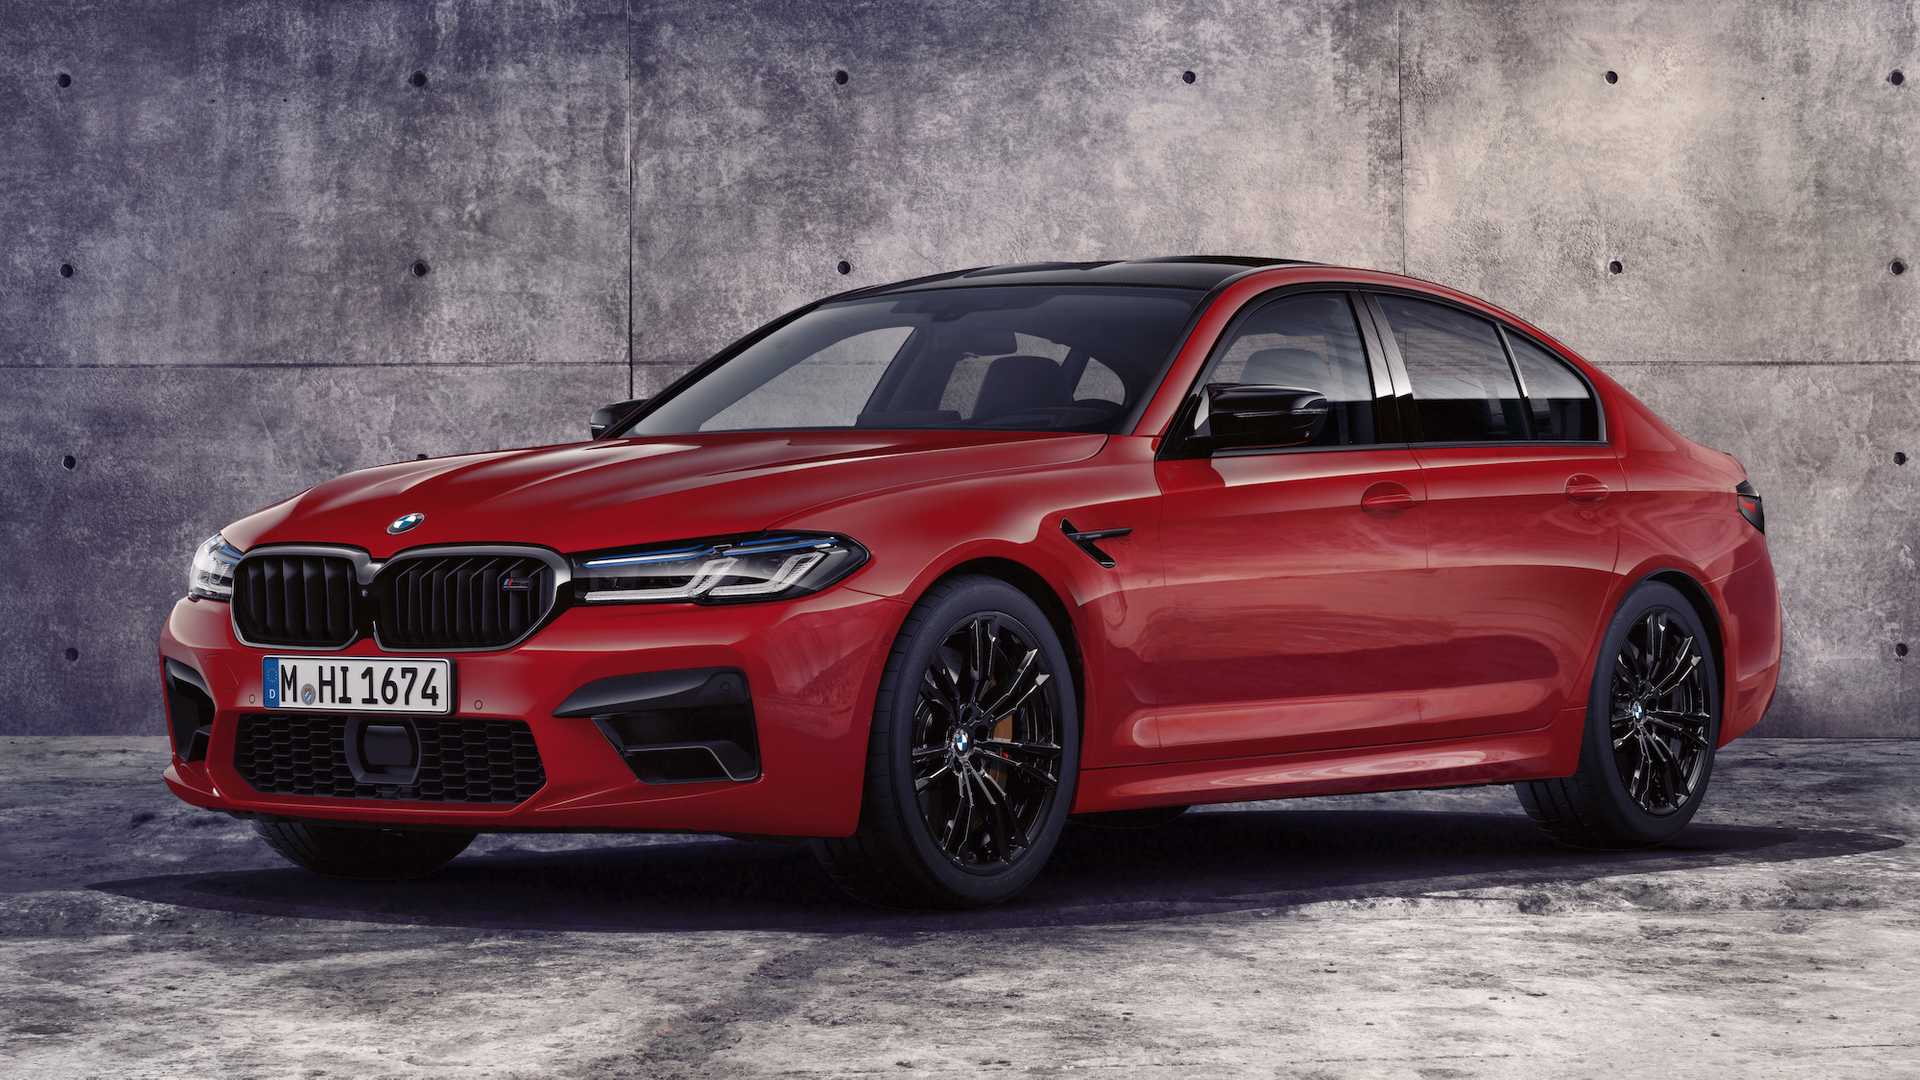 2021 BMW M5 tanıtıldı! İşte detayları